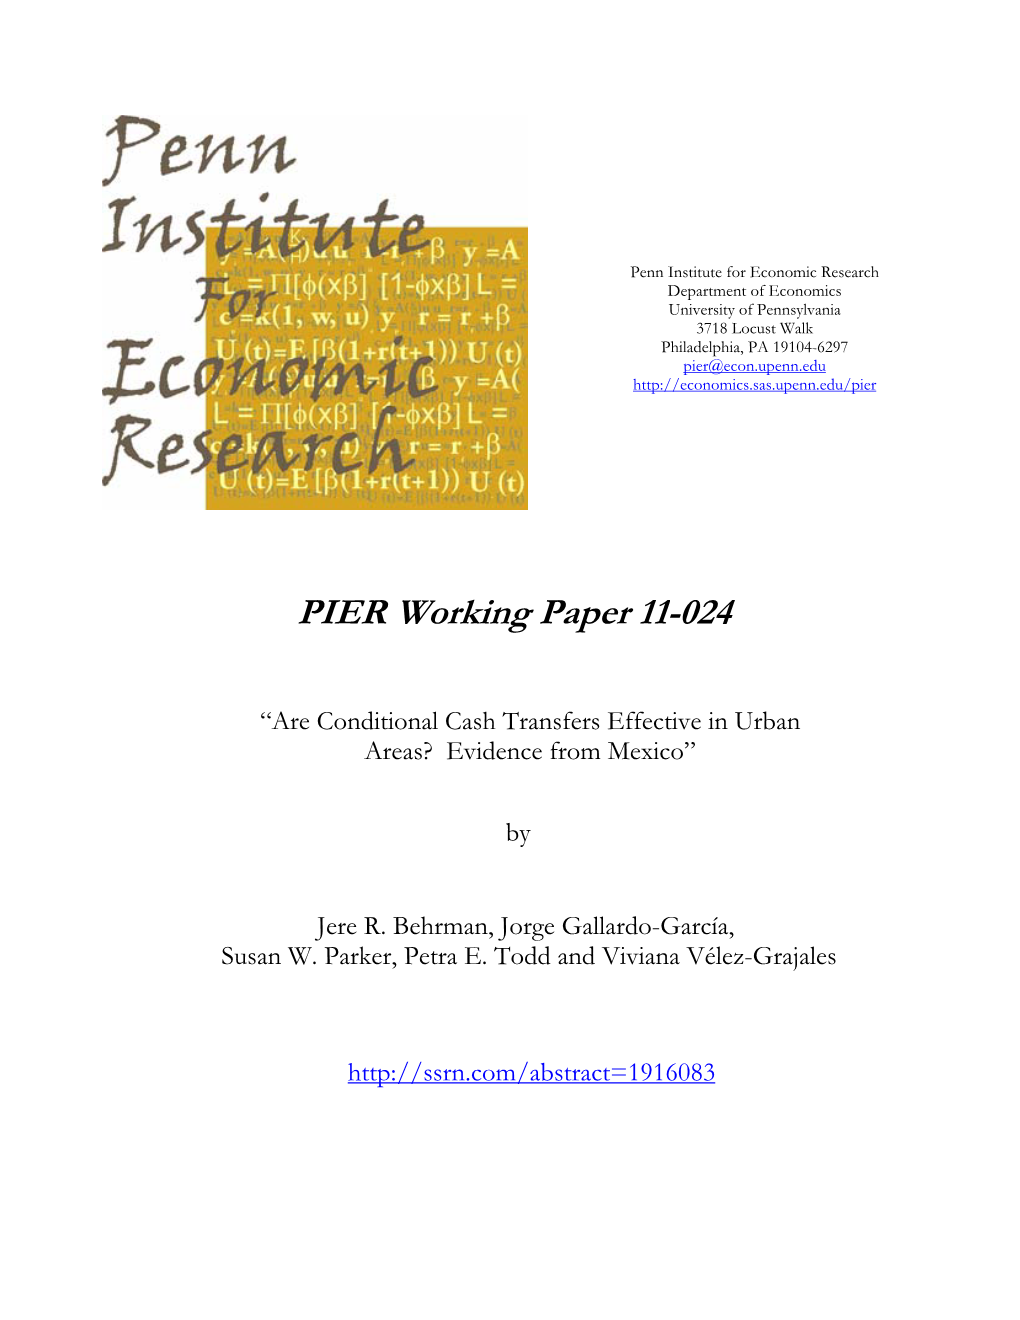 PIER Working Paper 11-024